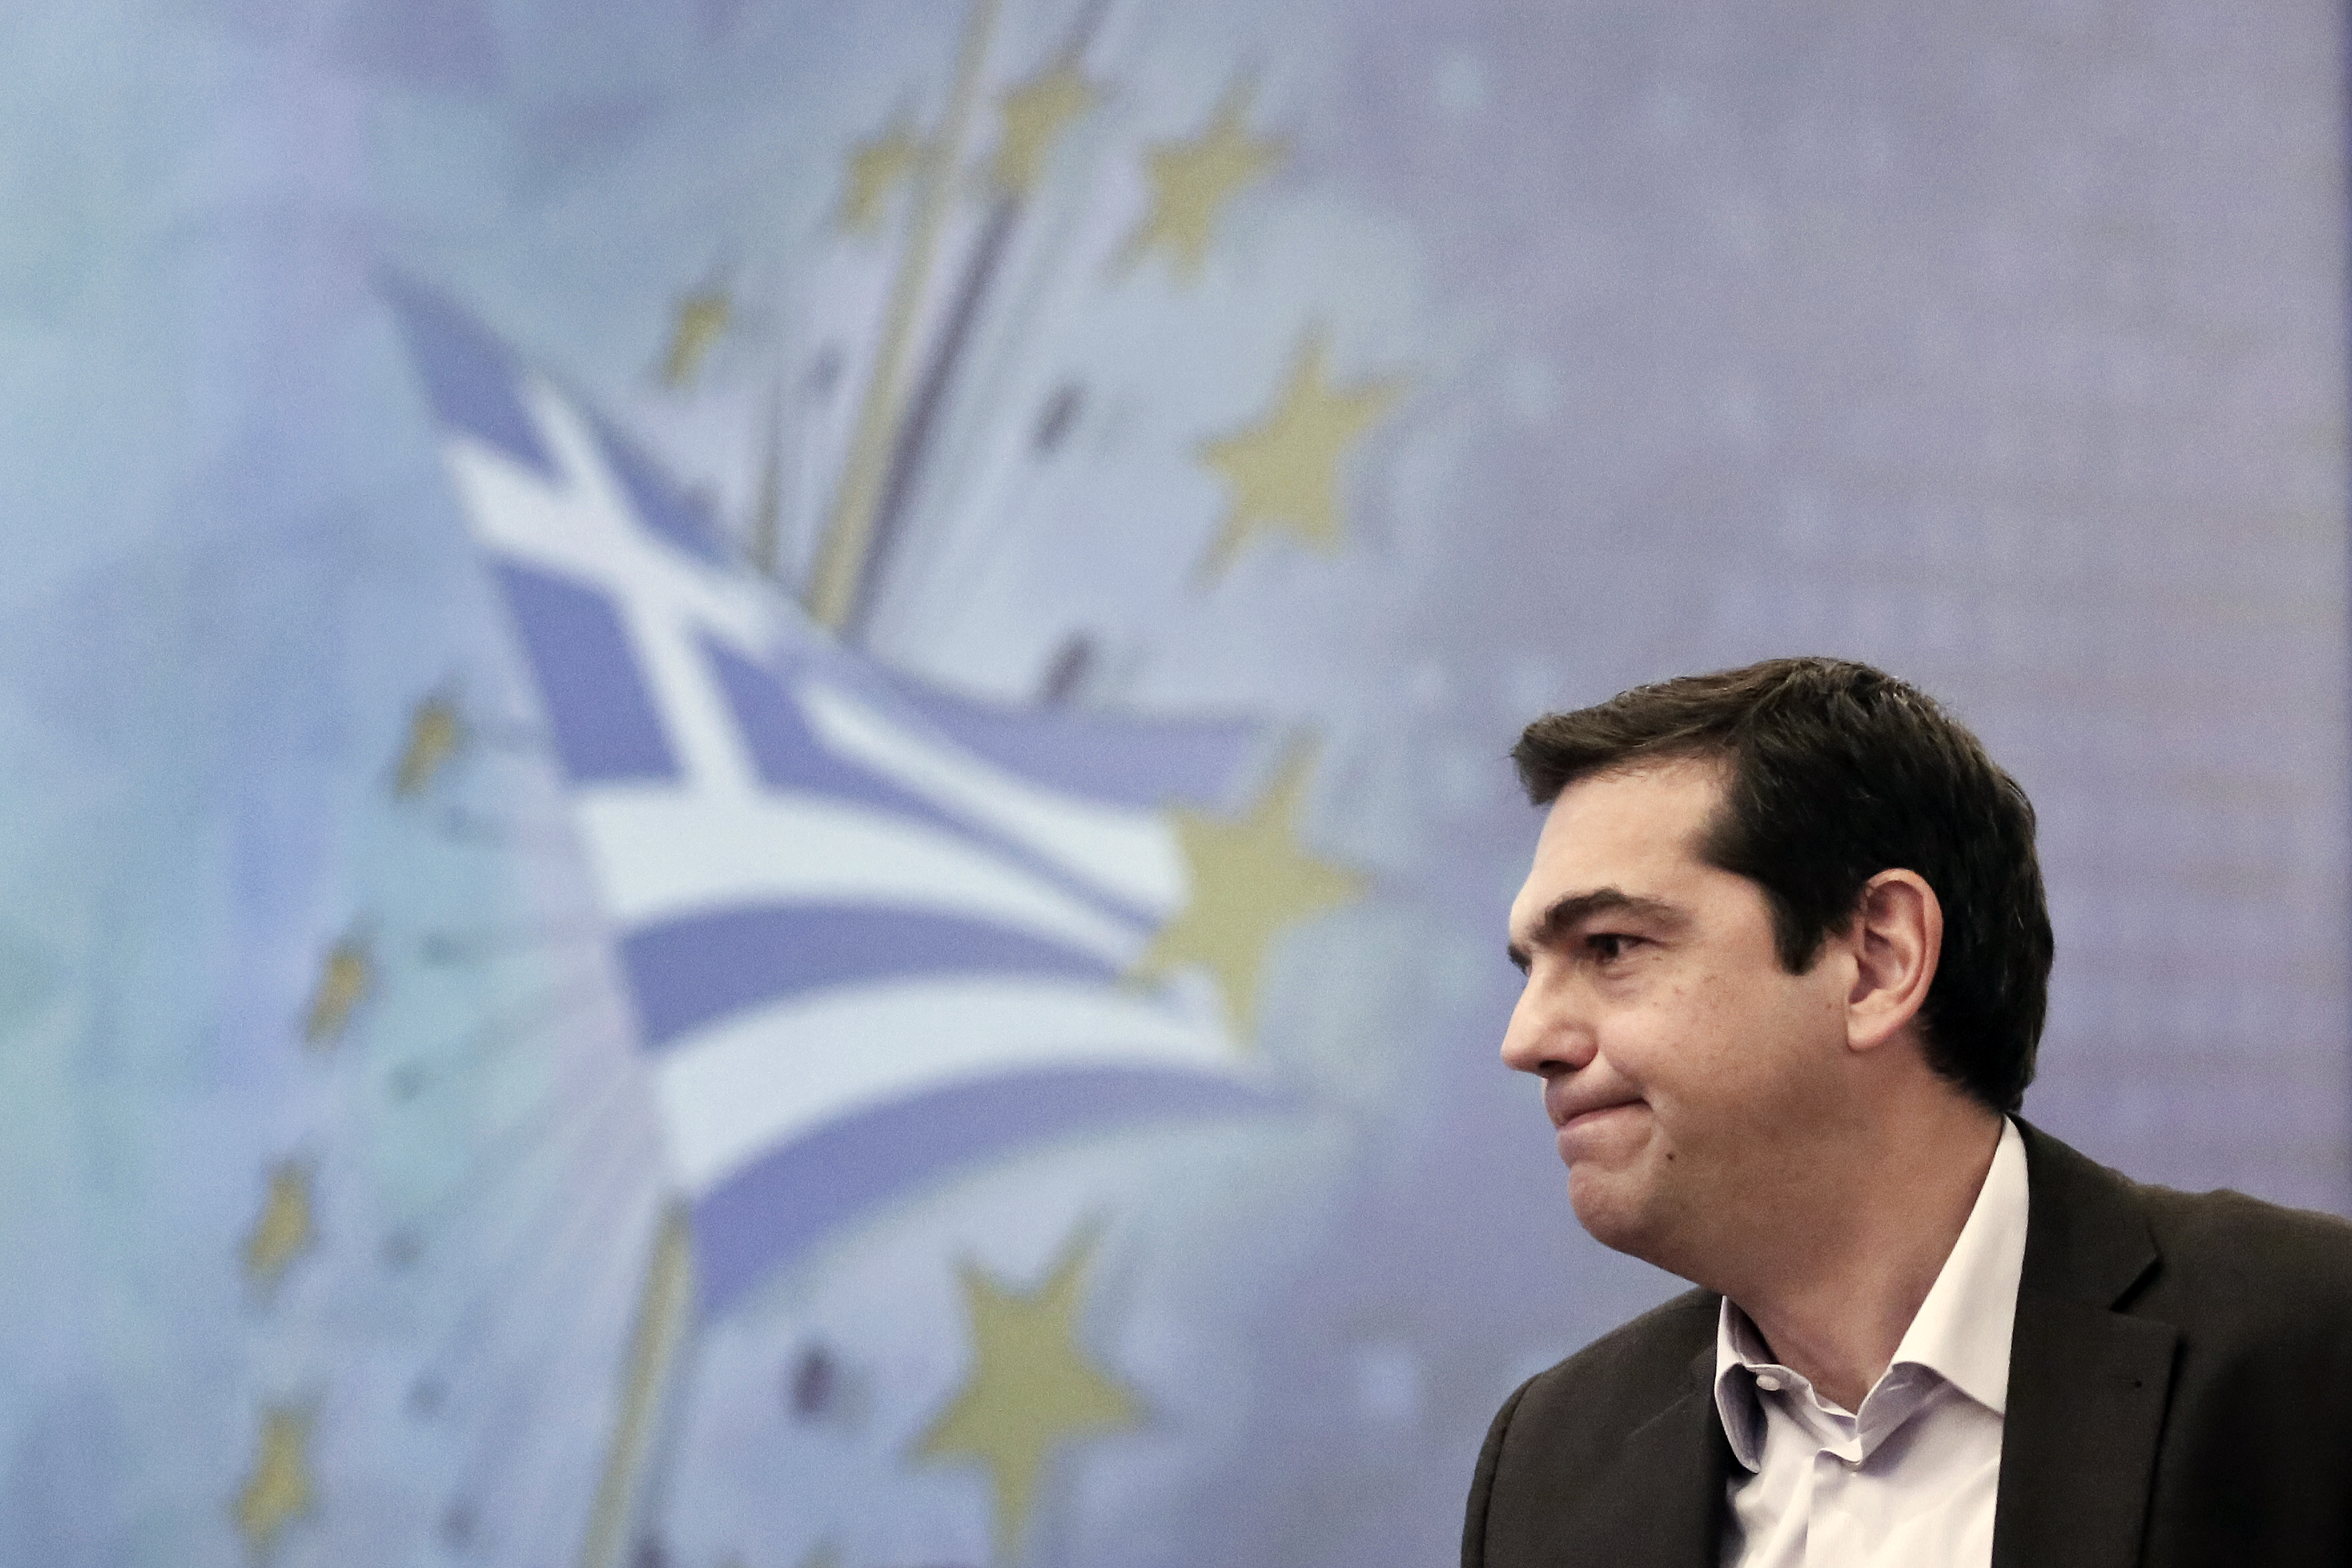 Ν.Παππάς: Ο ΣΥΡΙΖΑ δεν θα προβεί σε μονομερείς ενέργειες στη Ευρώπη